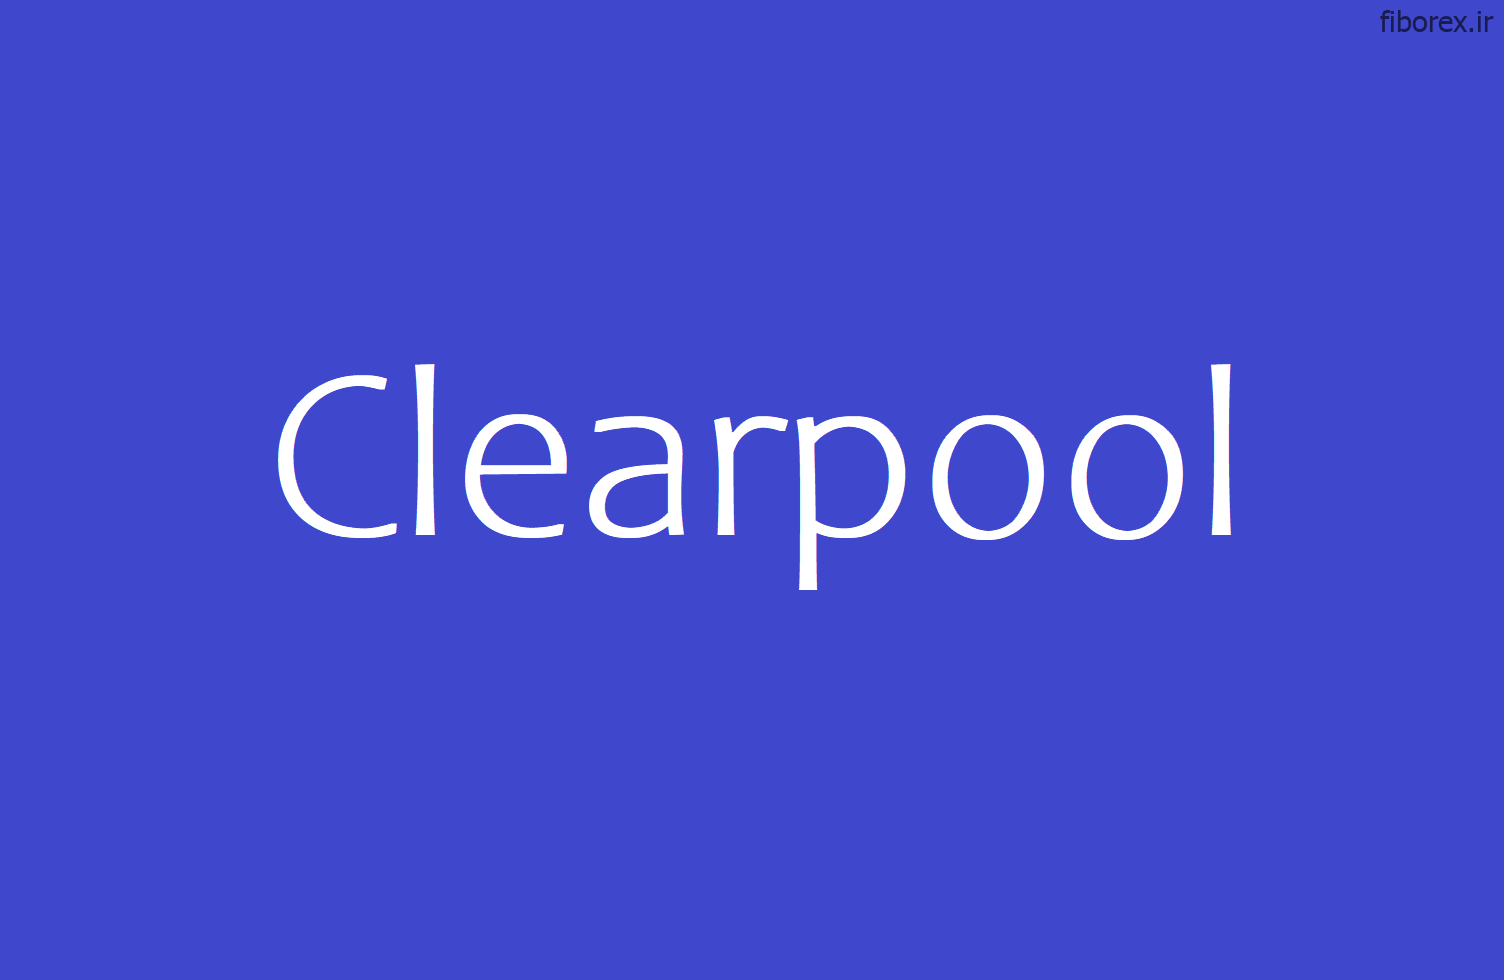 Clearpool